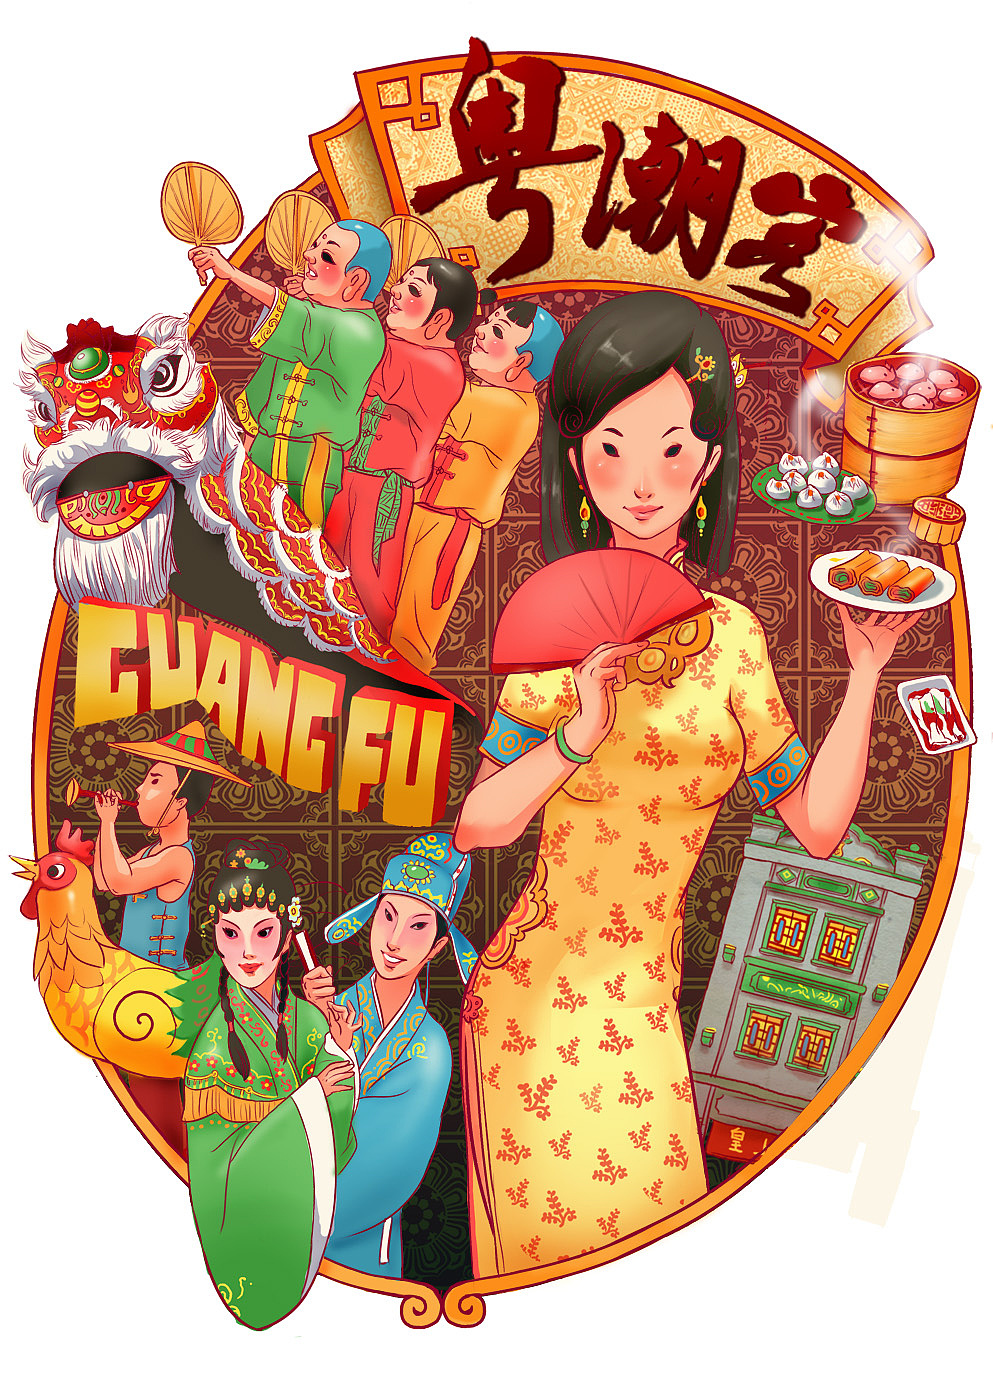 为广州某广告公司创作的一套推广岭南文化的主题插画 推荐